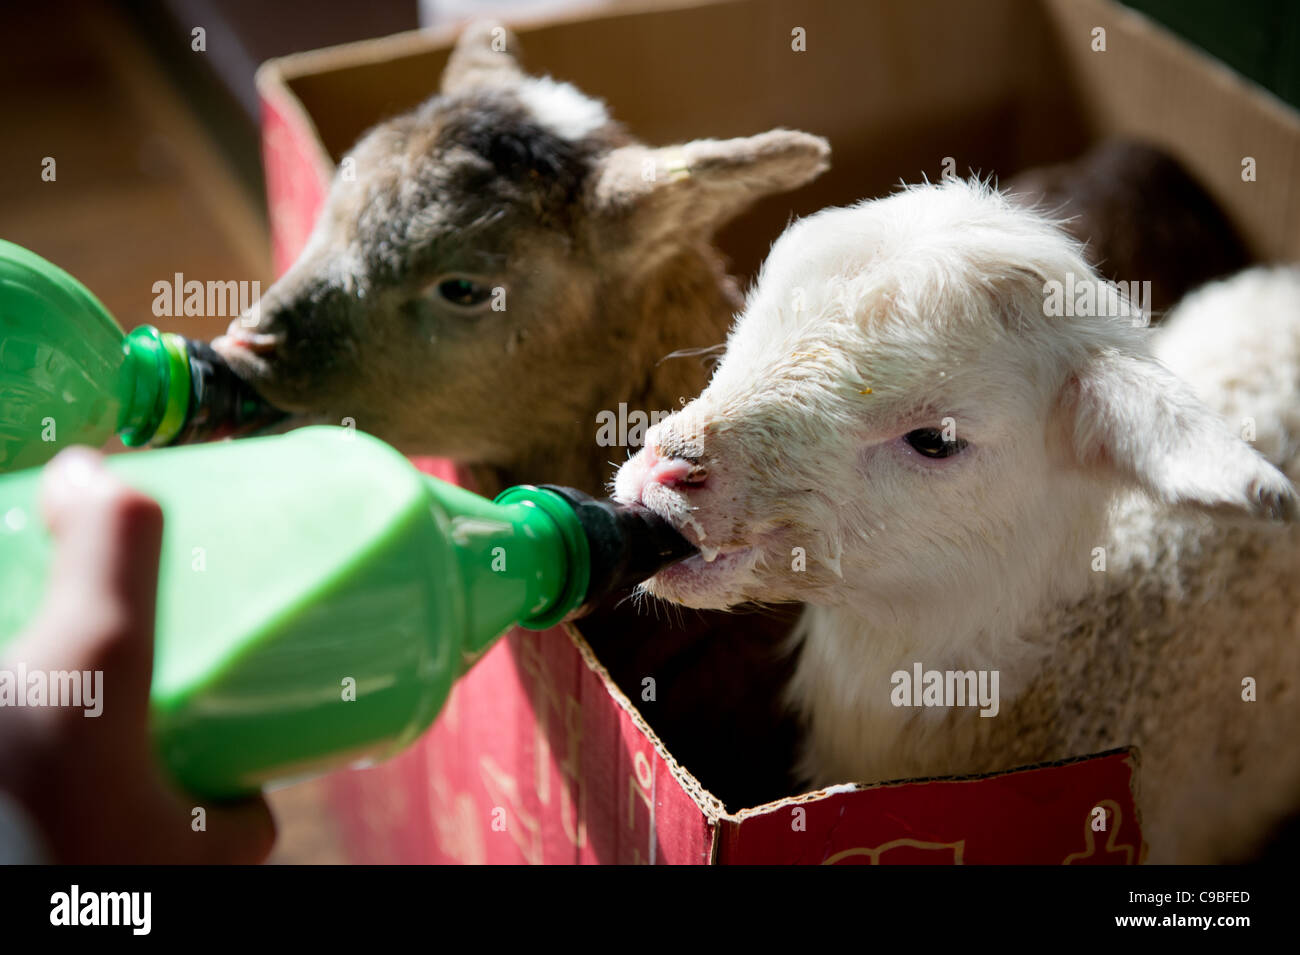 Les agneaux sont nourris de bouteille Banque D'Images